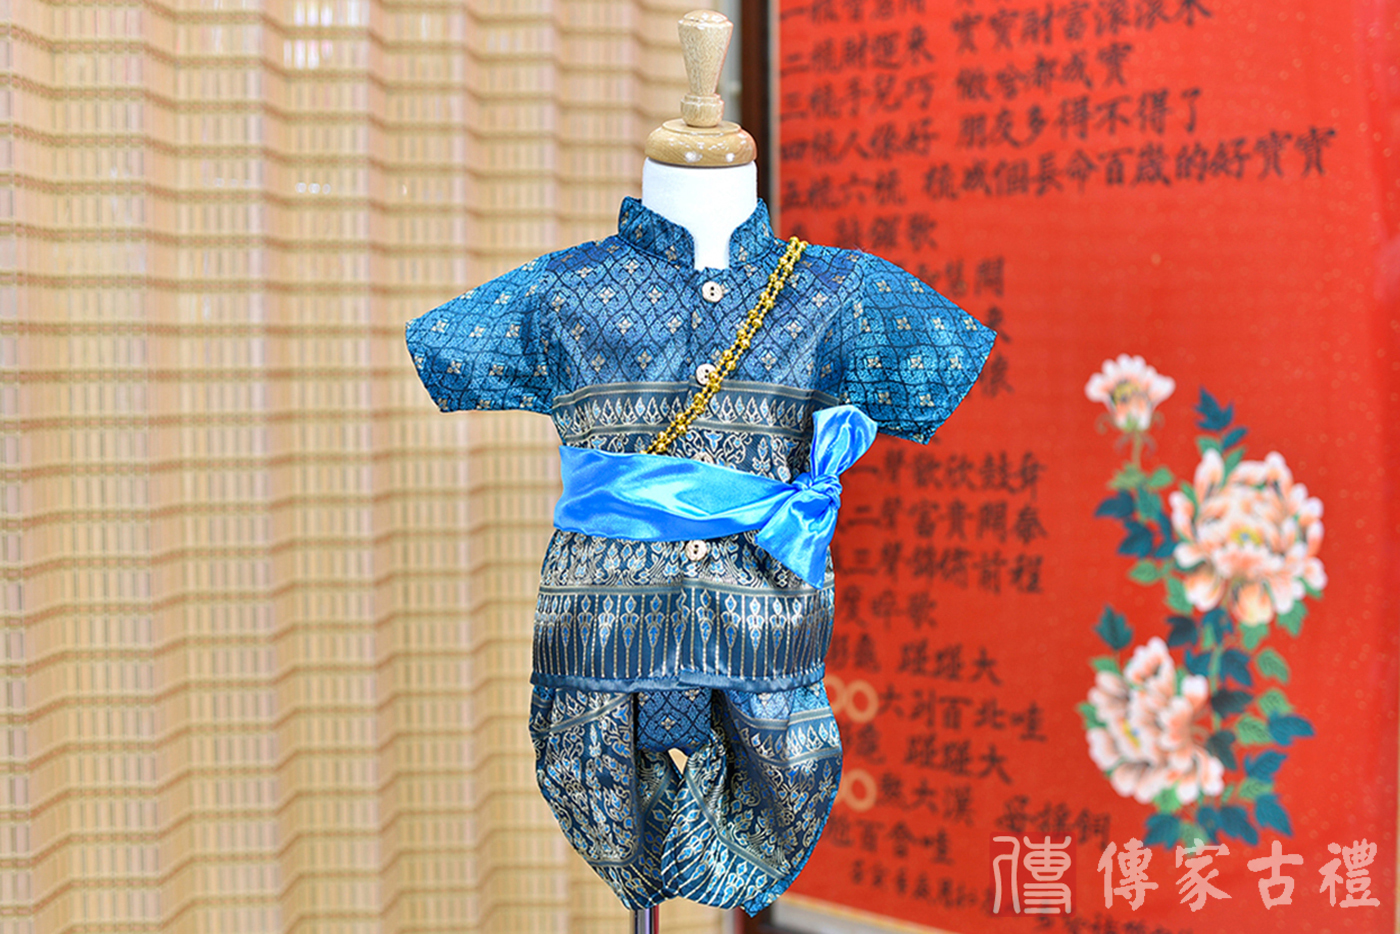 2024-02-25小孩皇室泰服古裝禮服。湛藍色絲綢質感的上衣搭配複雜圖騰印花的藍灰色褲裝的泰式古裝禮服。照片集